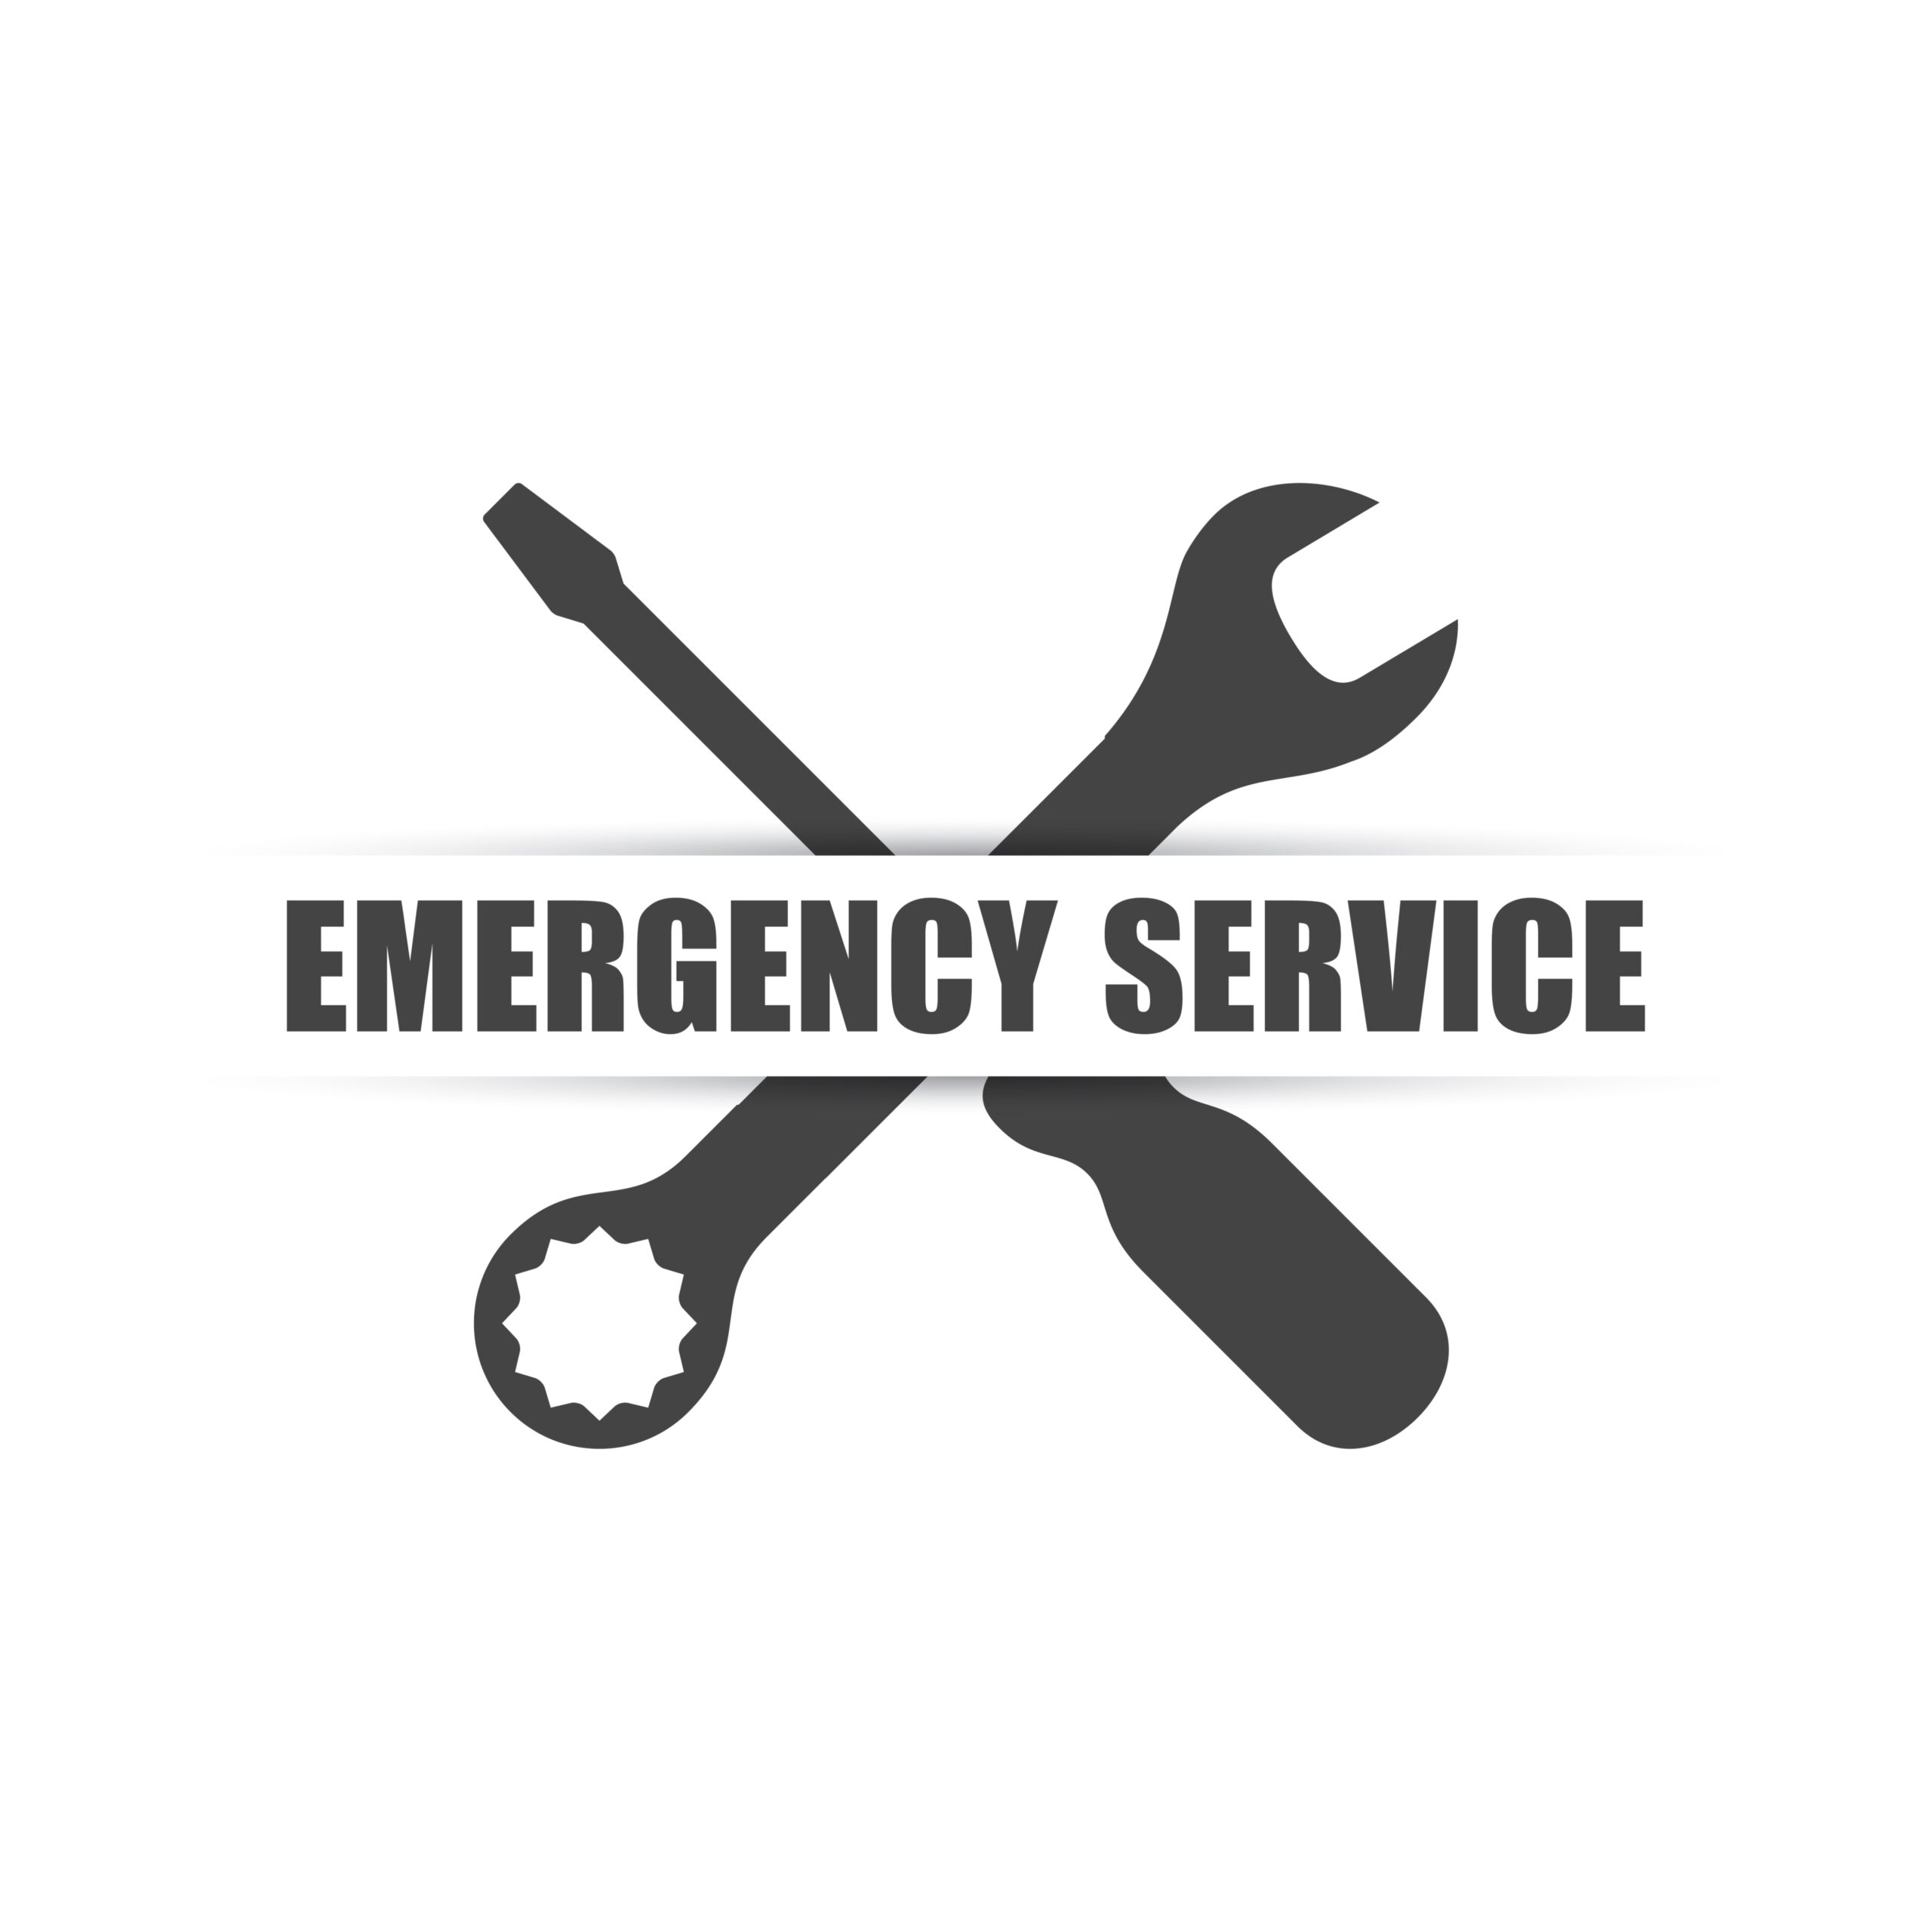 Emergency Service – please help!